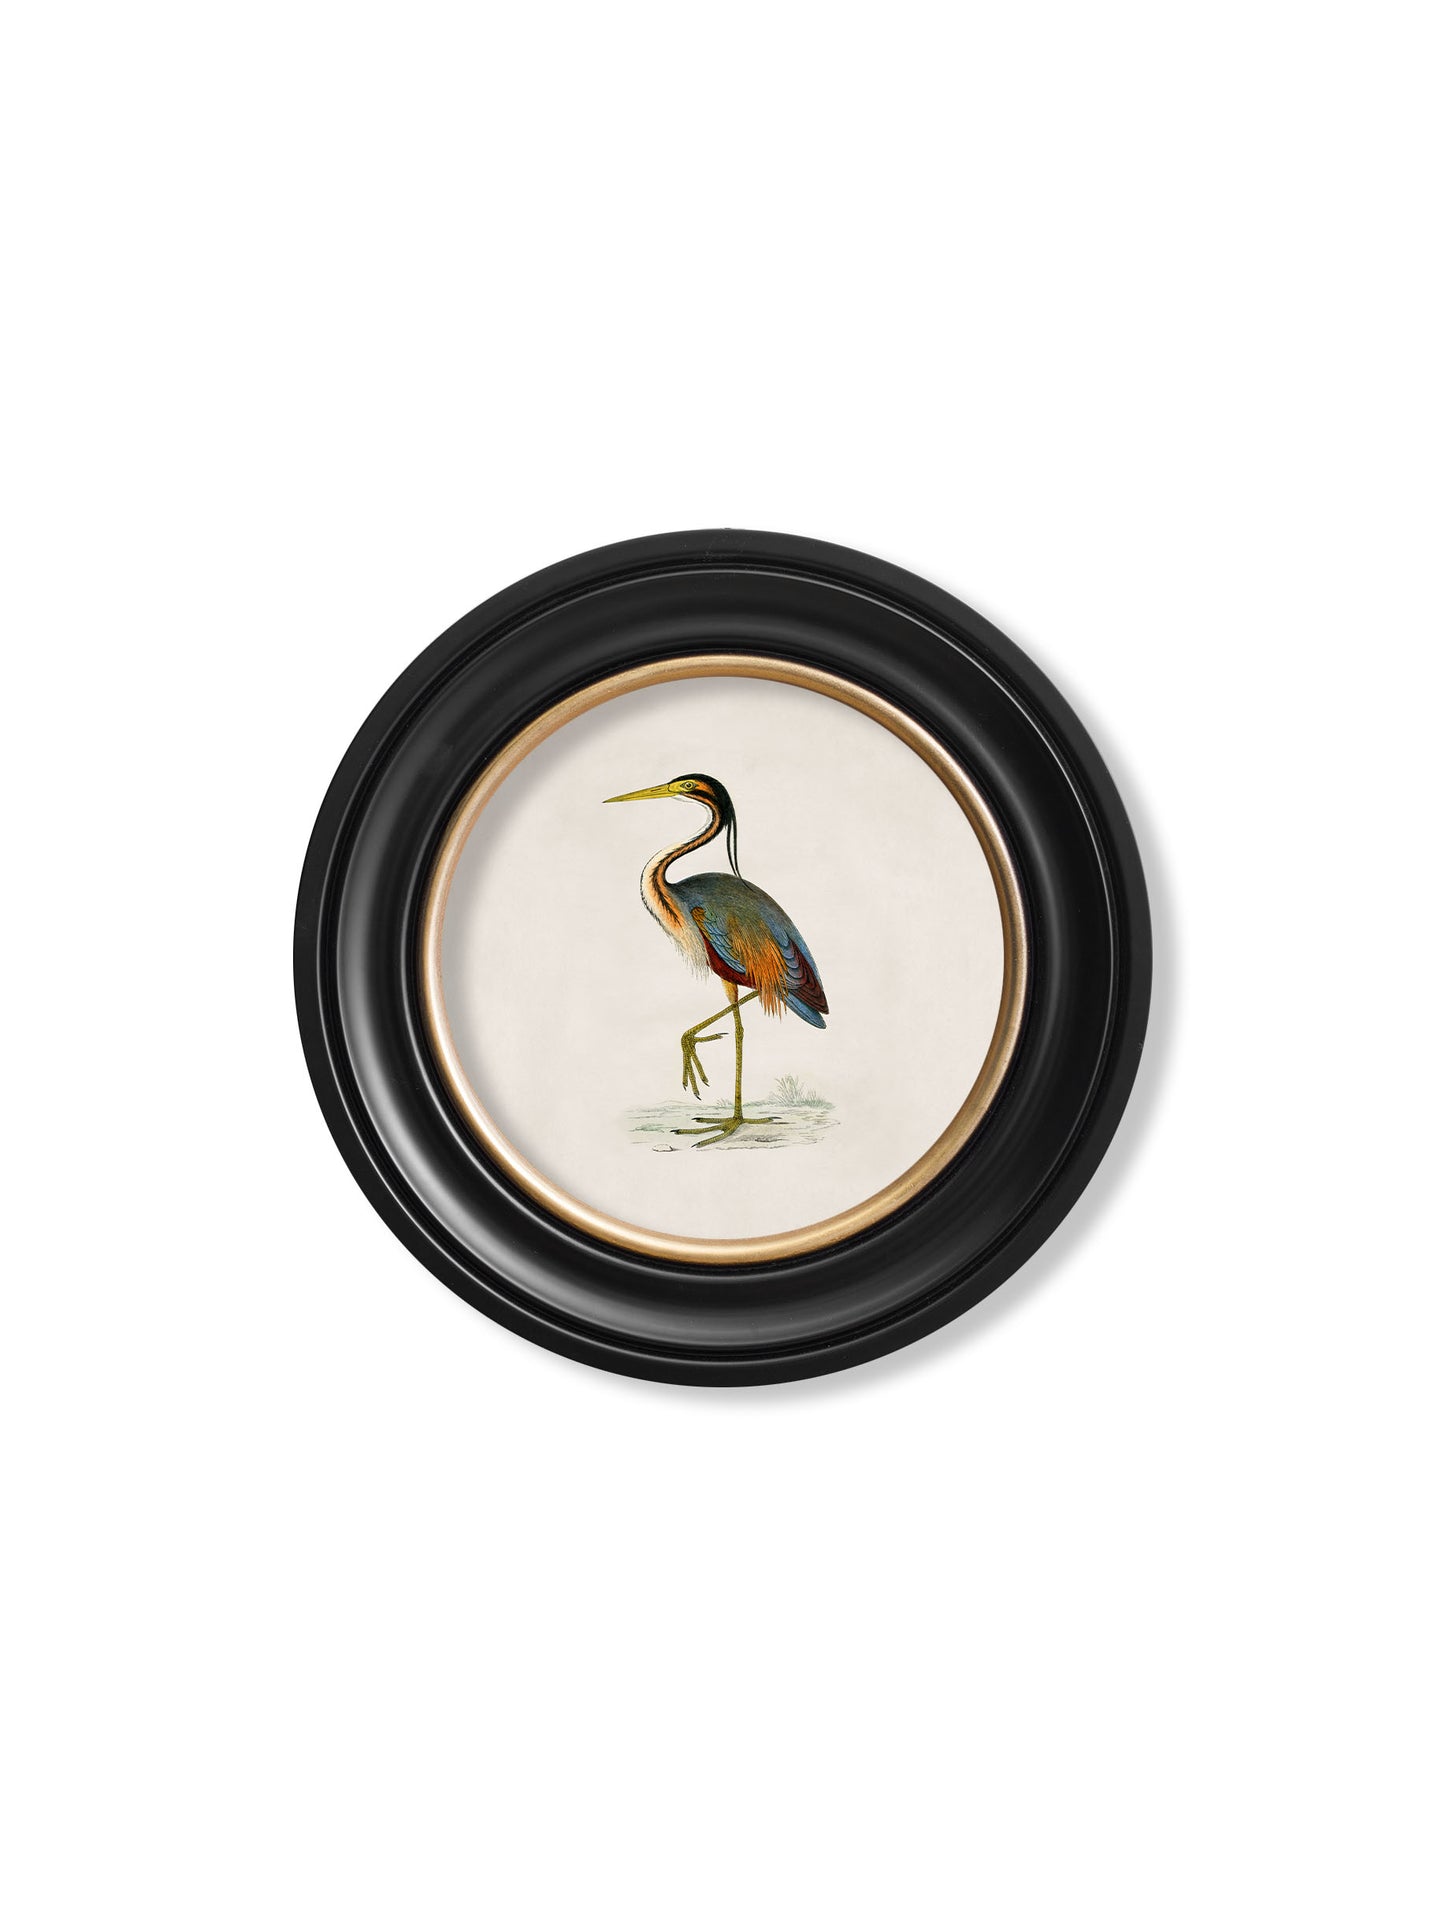 Round Framed British Bird Prints